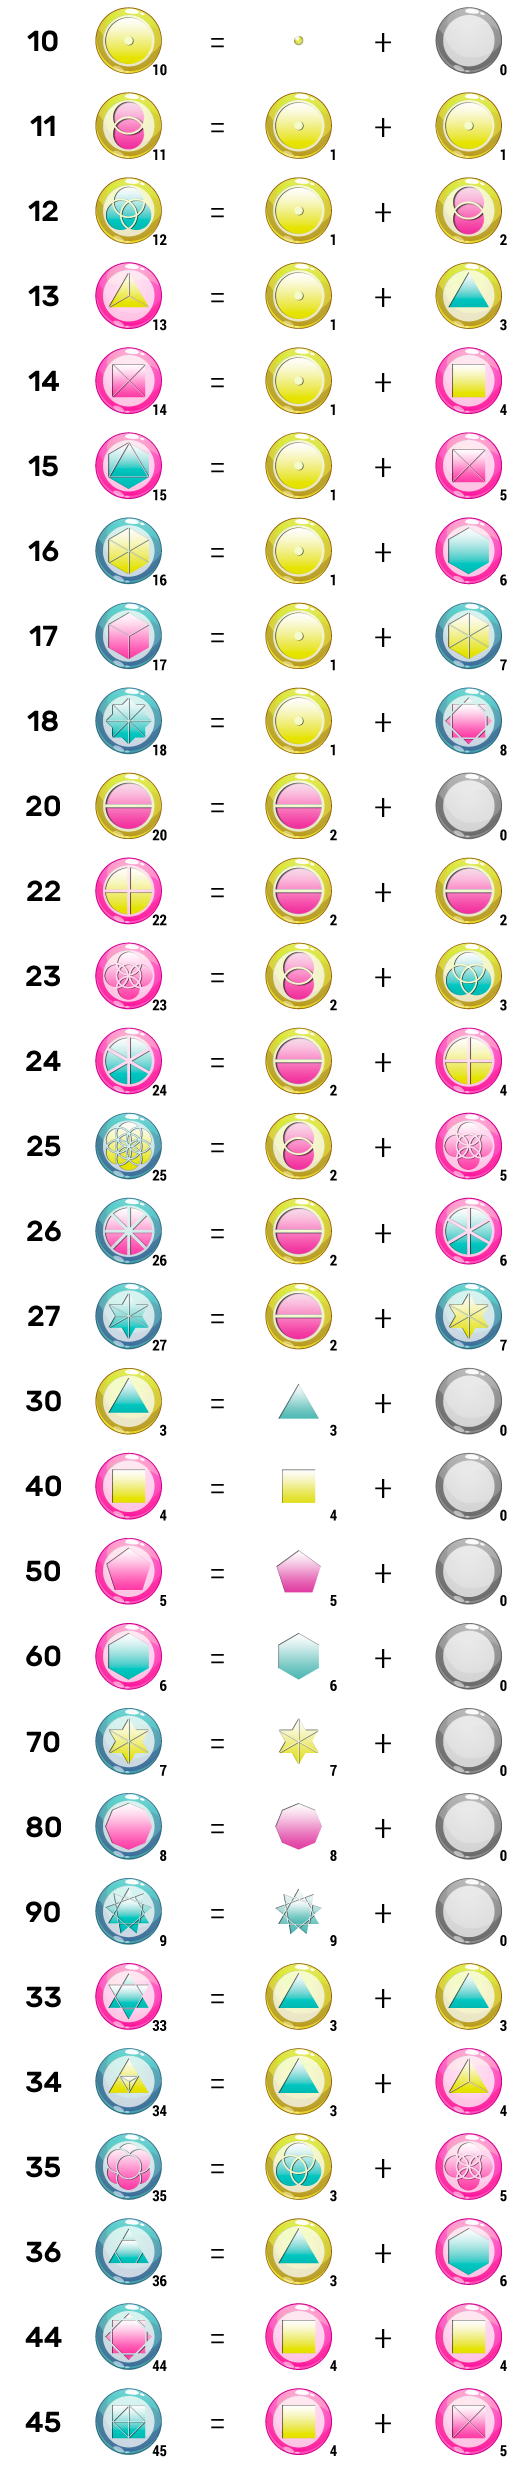 composition binaire des 29 symboles